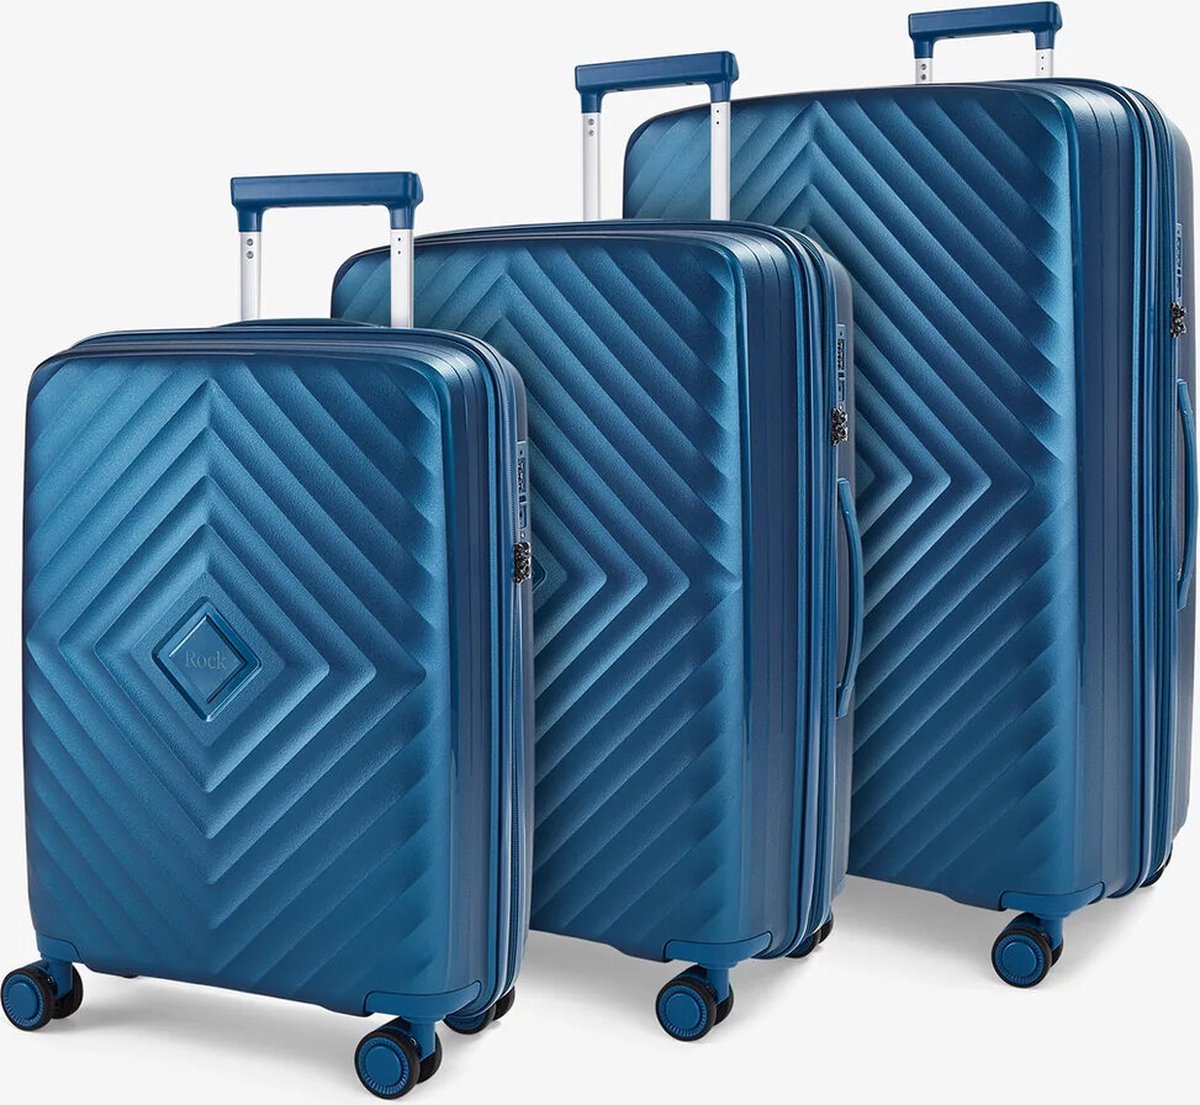 Koffer set 3-delig - Rock® - Trolley met TSA slot - Dubbel Rits - PP silicone reiskoffer - 360 draai wielen